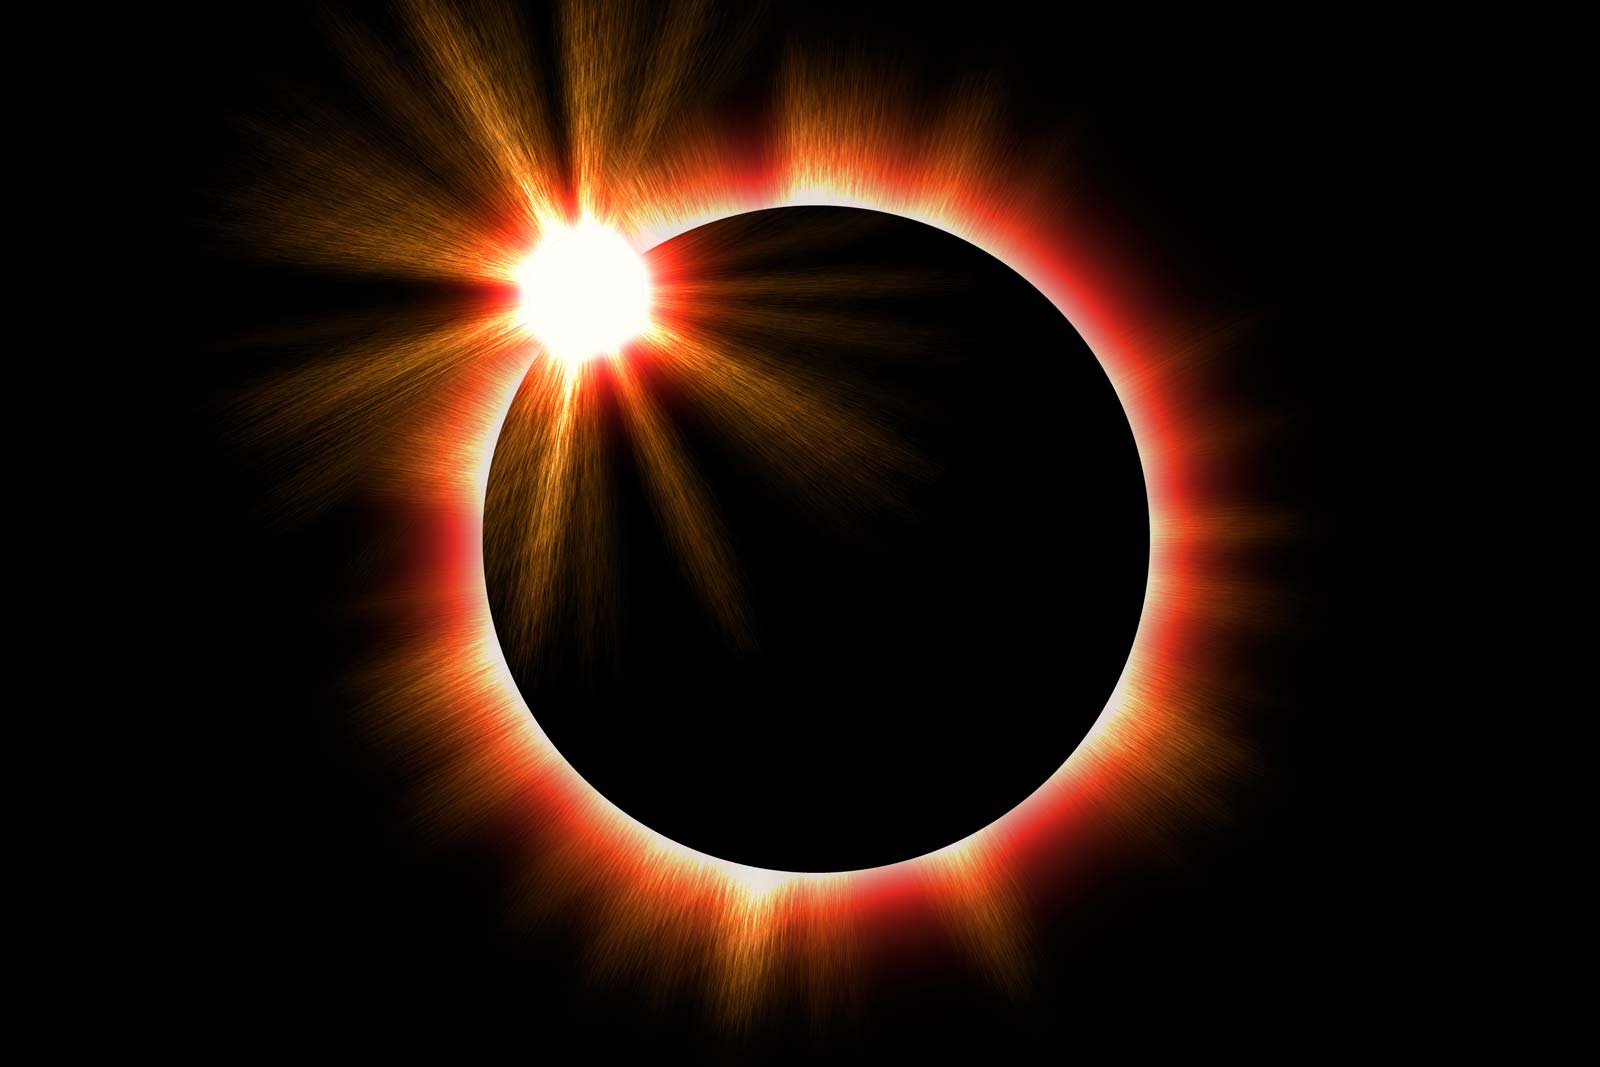 सूर्य ग्रहण पर भीड़ की आशंका के मद्देनज़र कुरूक्षेत्र में तीन दिनों तक कर्फ्यू की घोषणा